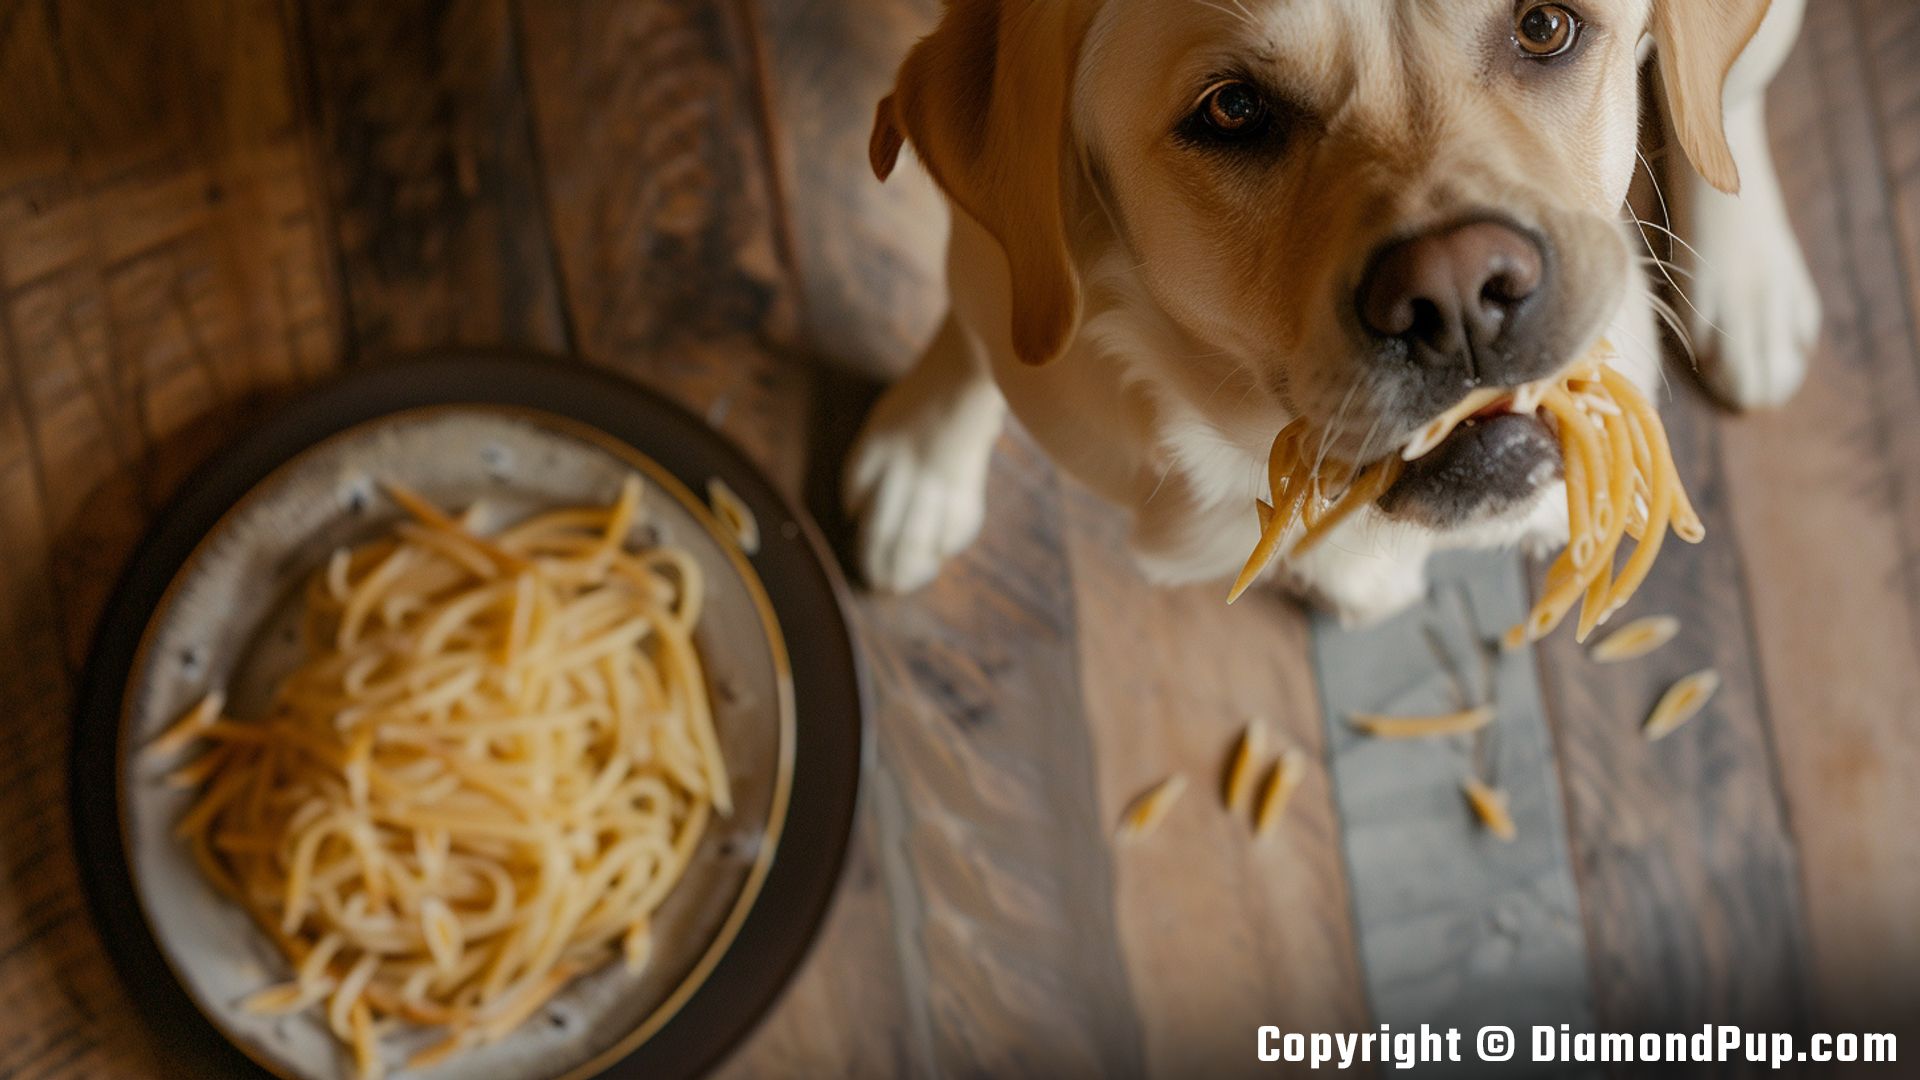 Photograph of a Happy Labrador Eating Pasta